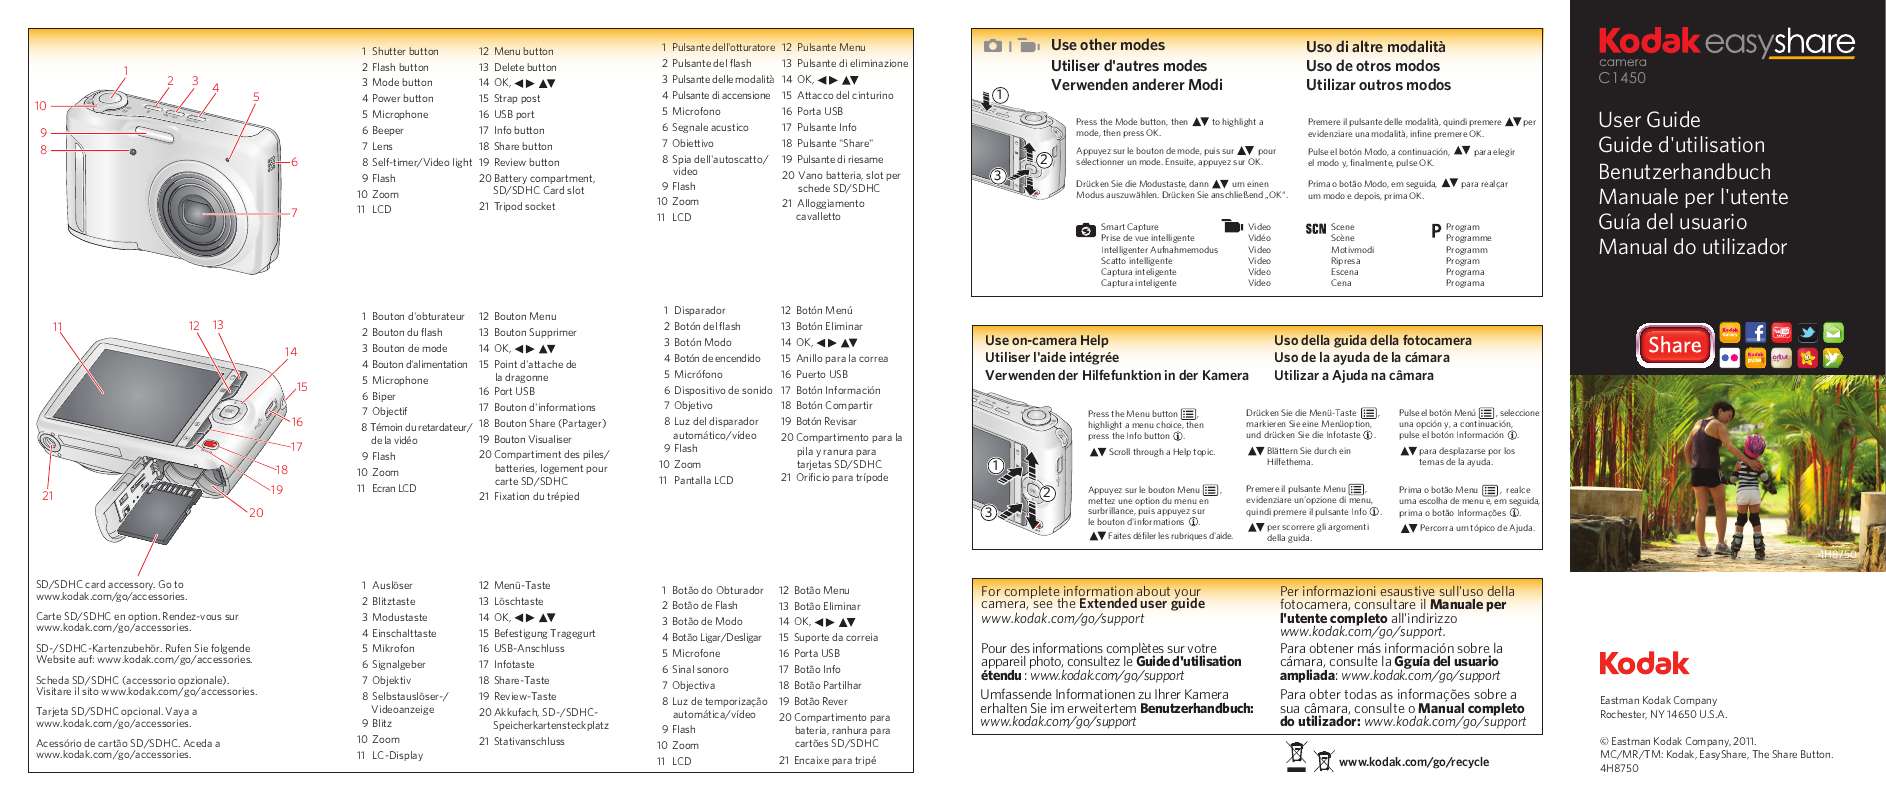 Guide utilisation KODAK EASYSHARE M583  de la marque KODAK